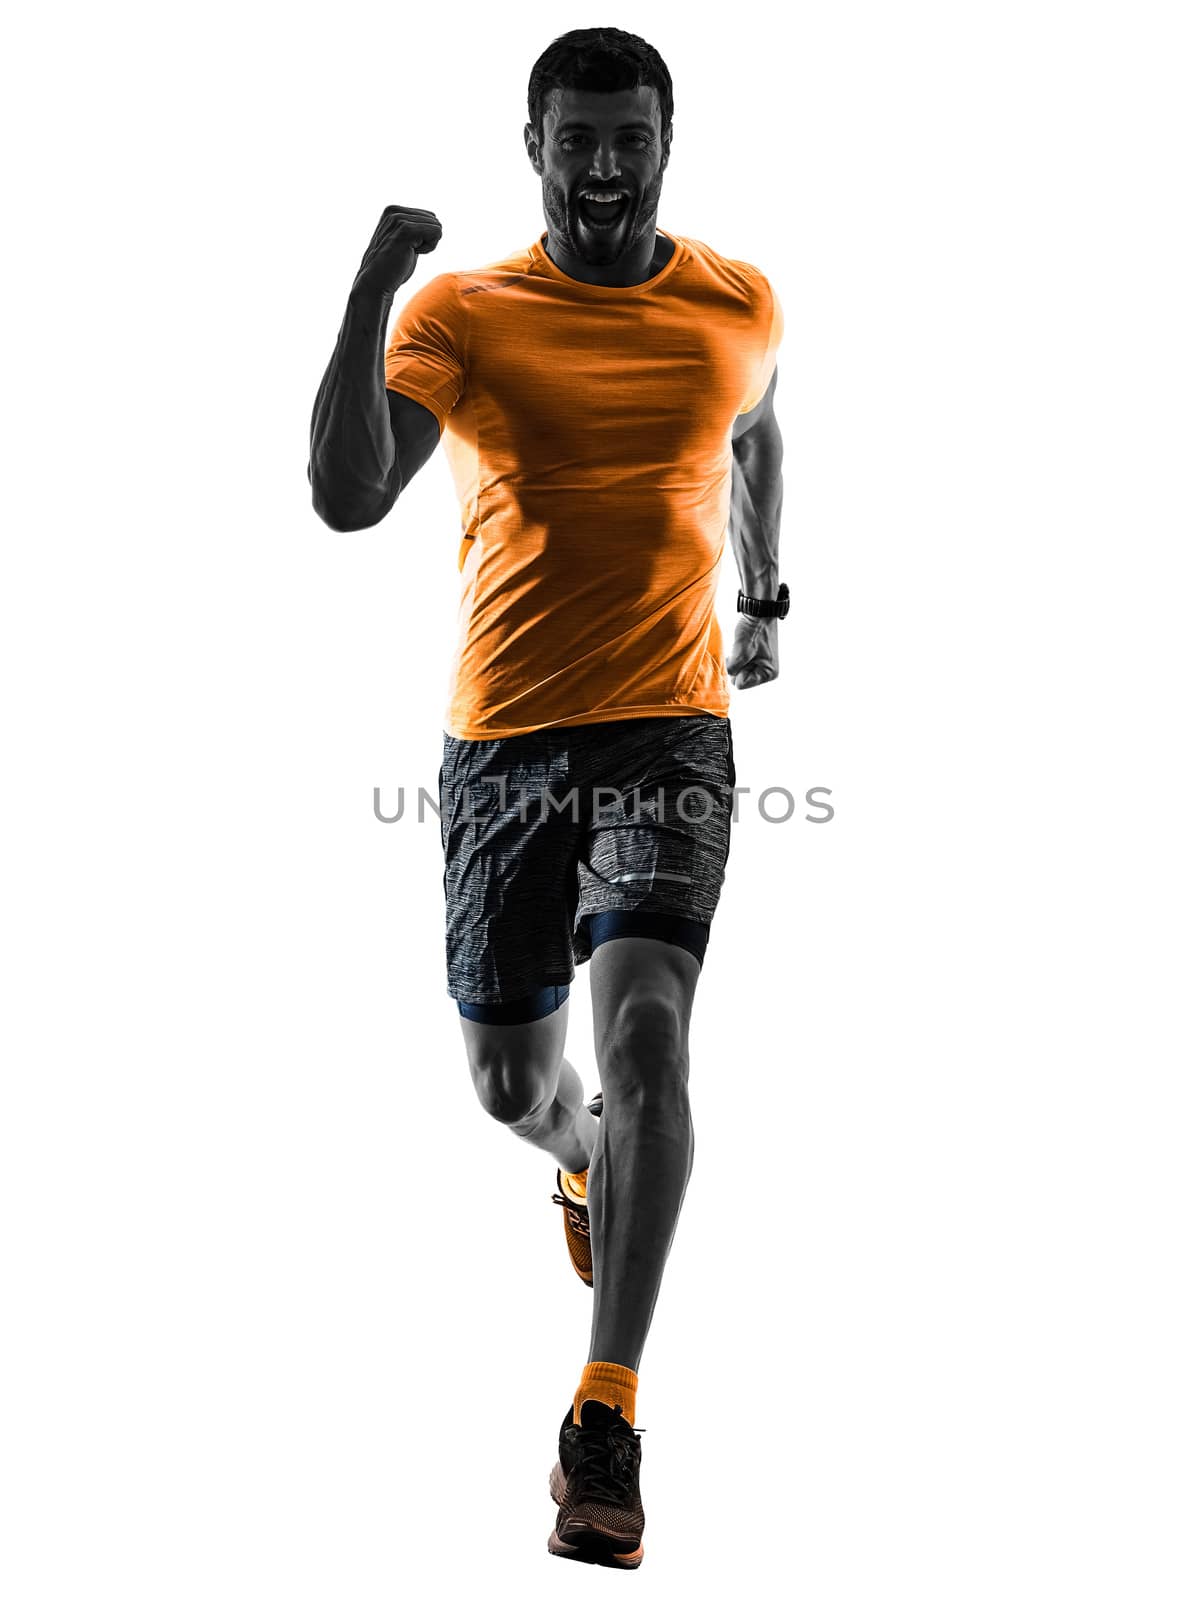 man runner running jogger jogging isolated silhouette white back by PIXSTILL